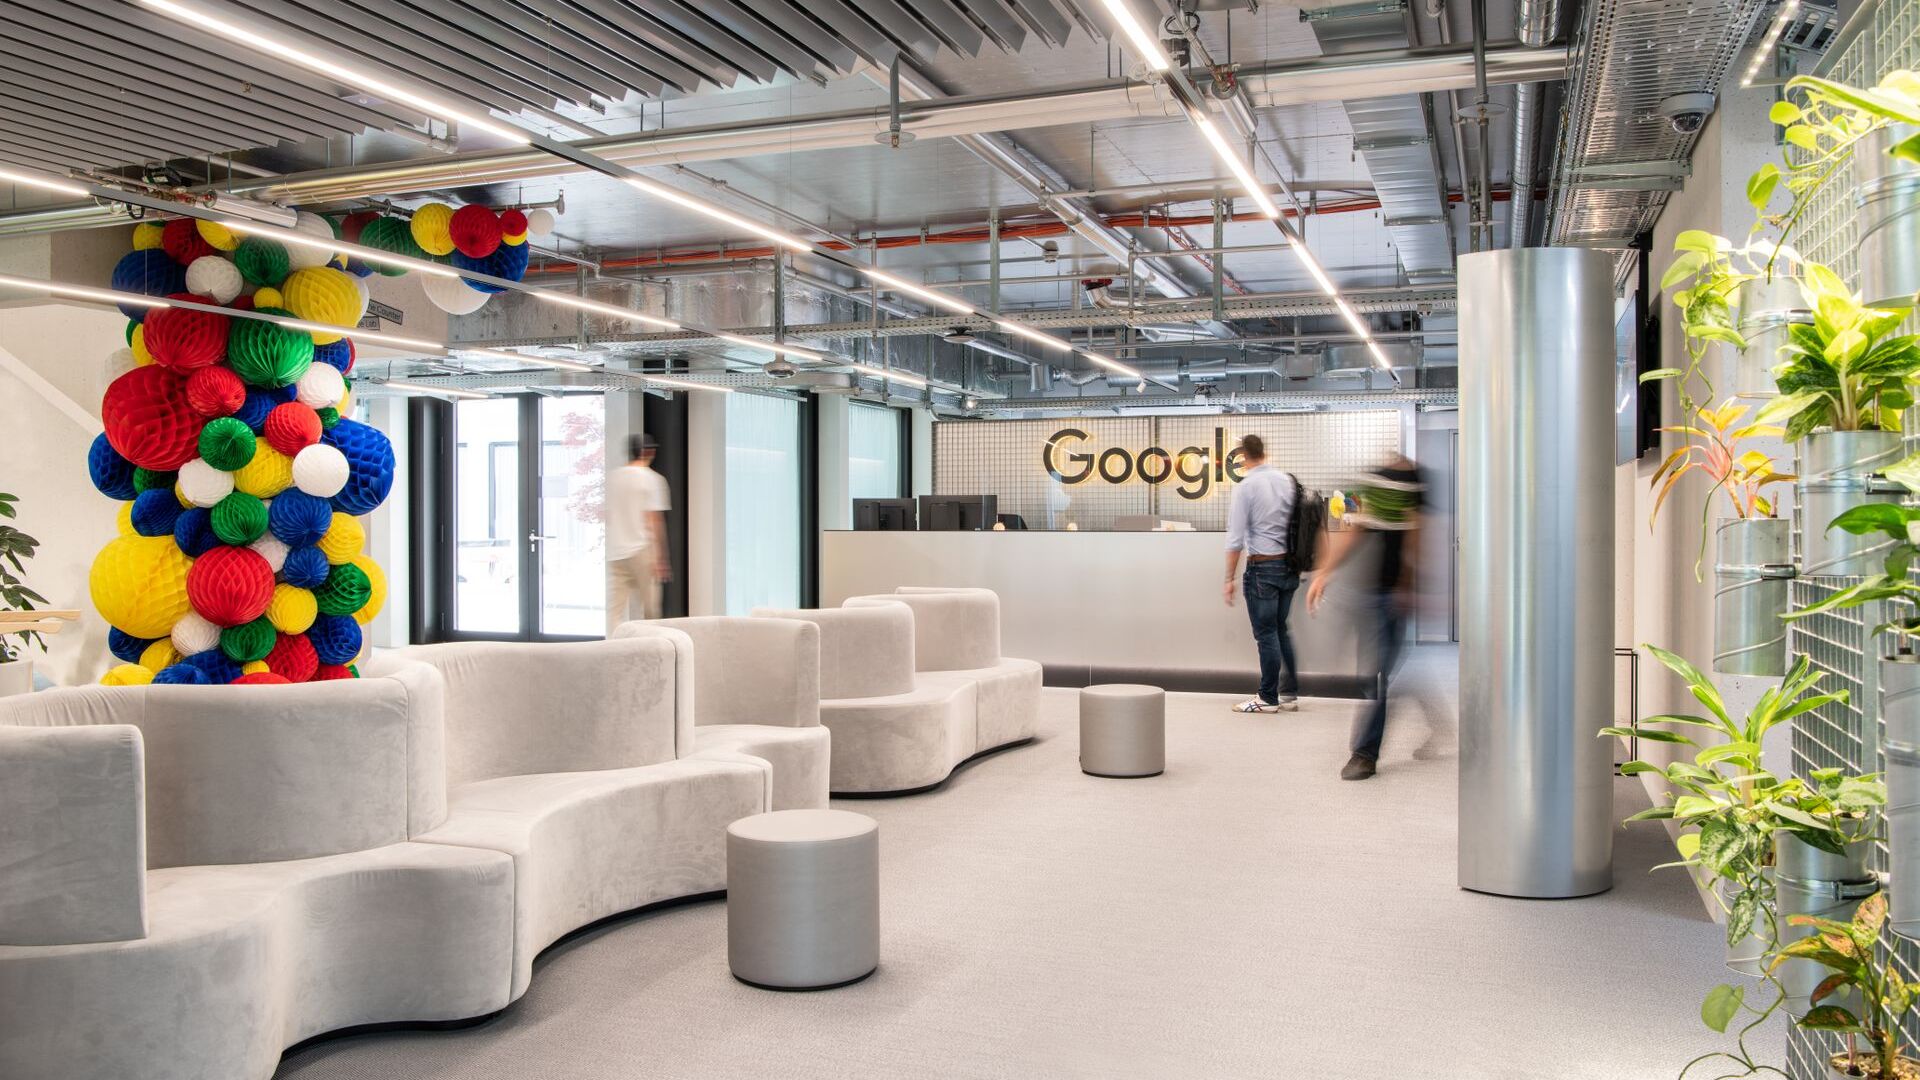 Google je 27. junija 2022 v prisotnosti Patricka Warnkinga, direktorja za državo Švica, otvoril Campus Europaallee A1 v Zürichu, največje raziskovalno in razvojno središče podjetja IT zunaj Združenih držav: sedež je na naslovu Kasernenstrasse 95, blizu glavne železniška postaja švicarske gospodarske prestolnice